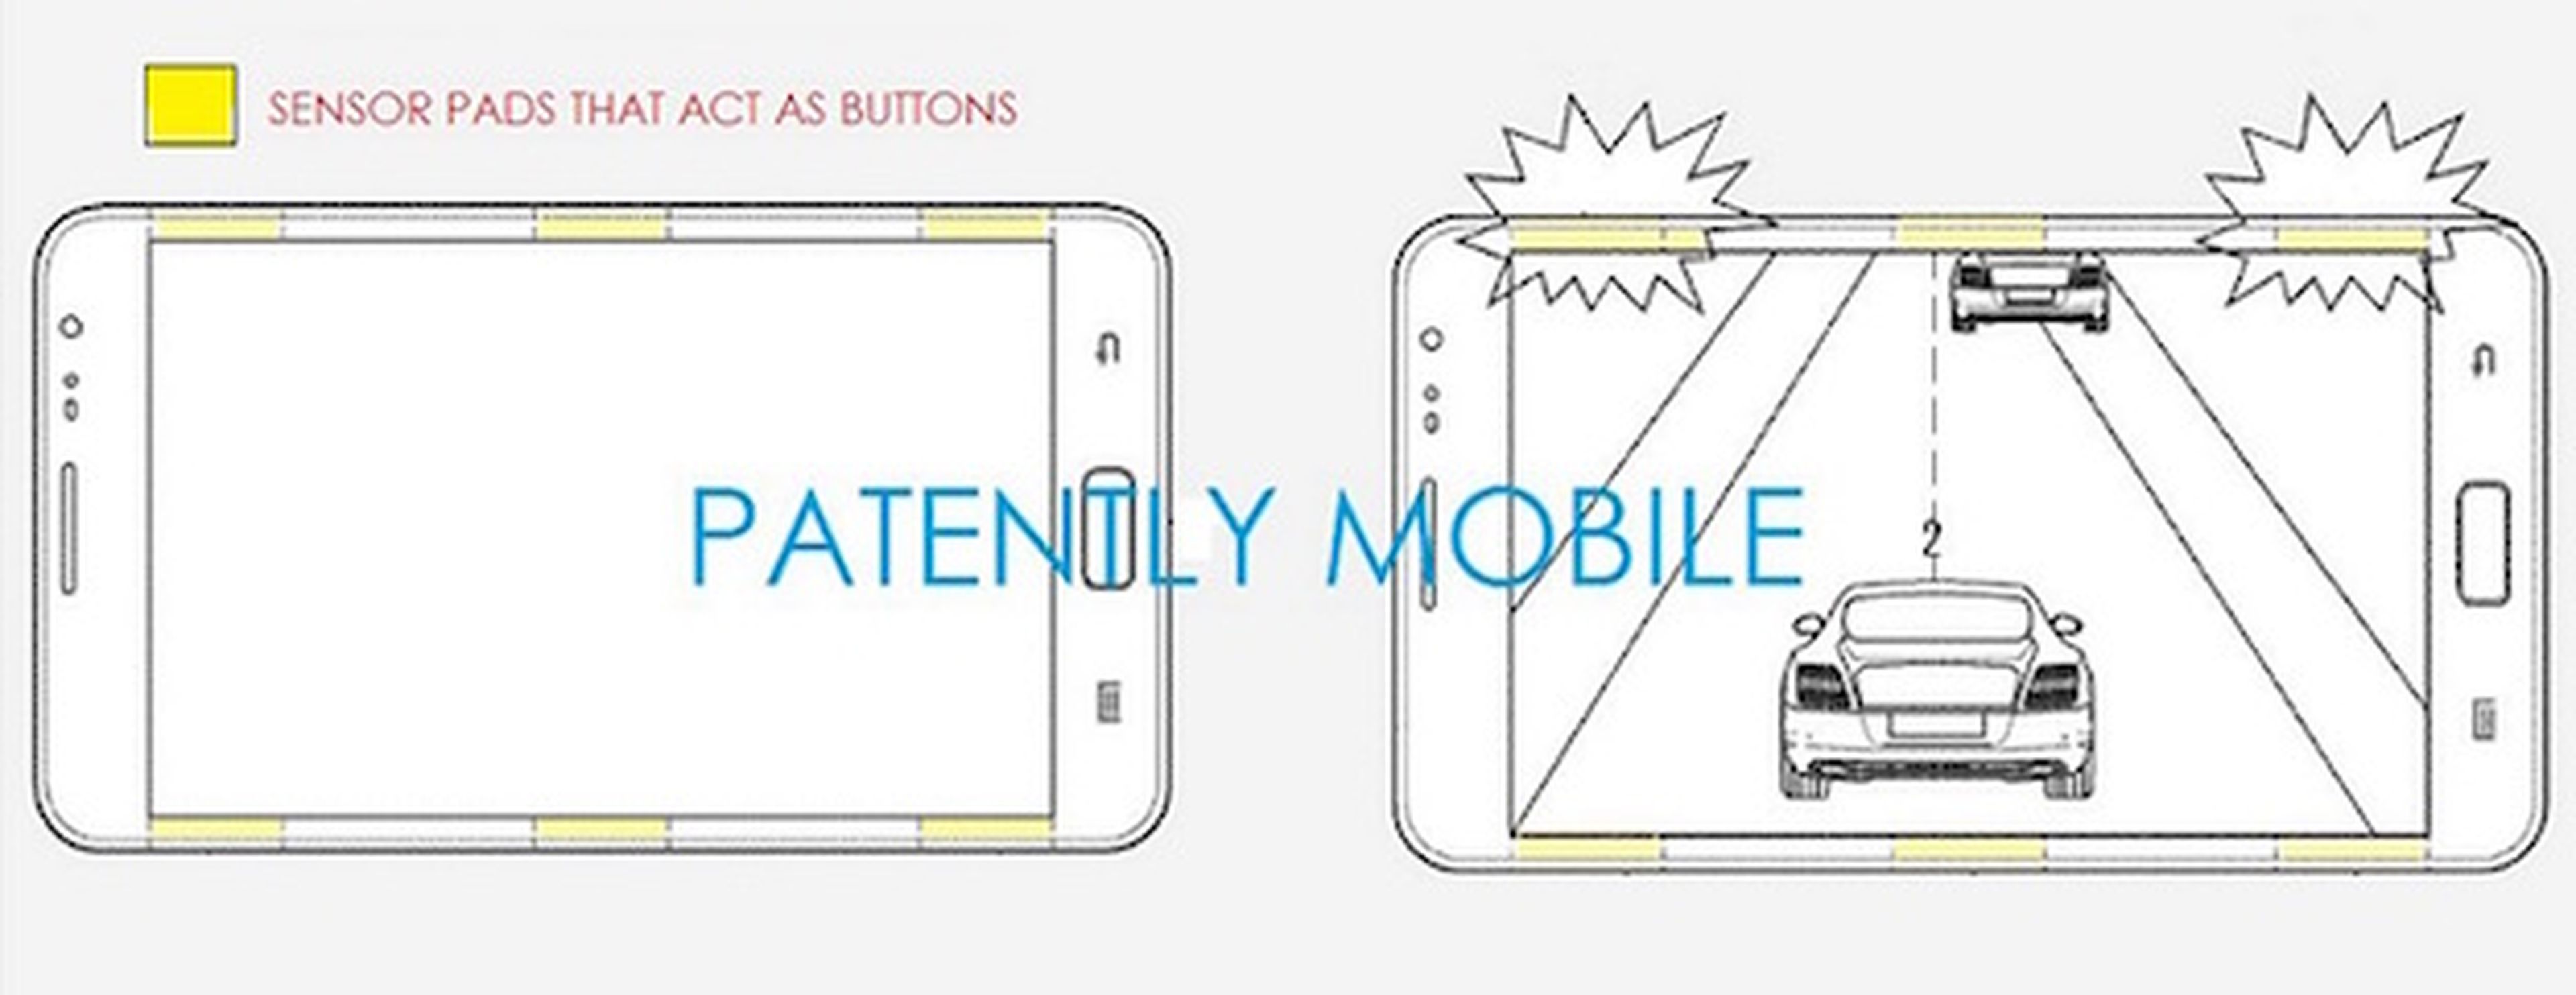 Samsung presenta una patente de marcos con sensores táctiles